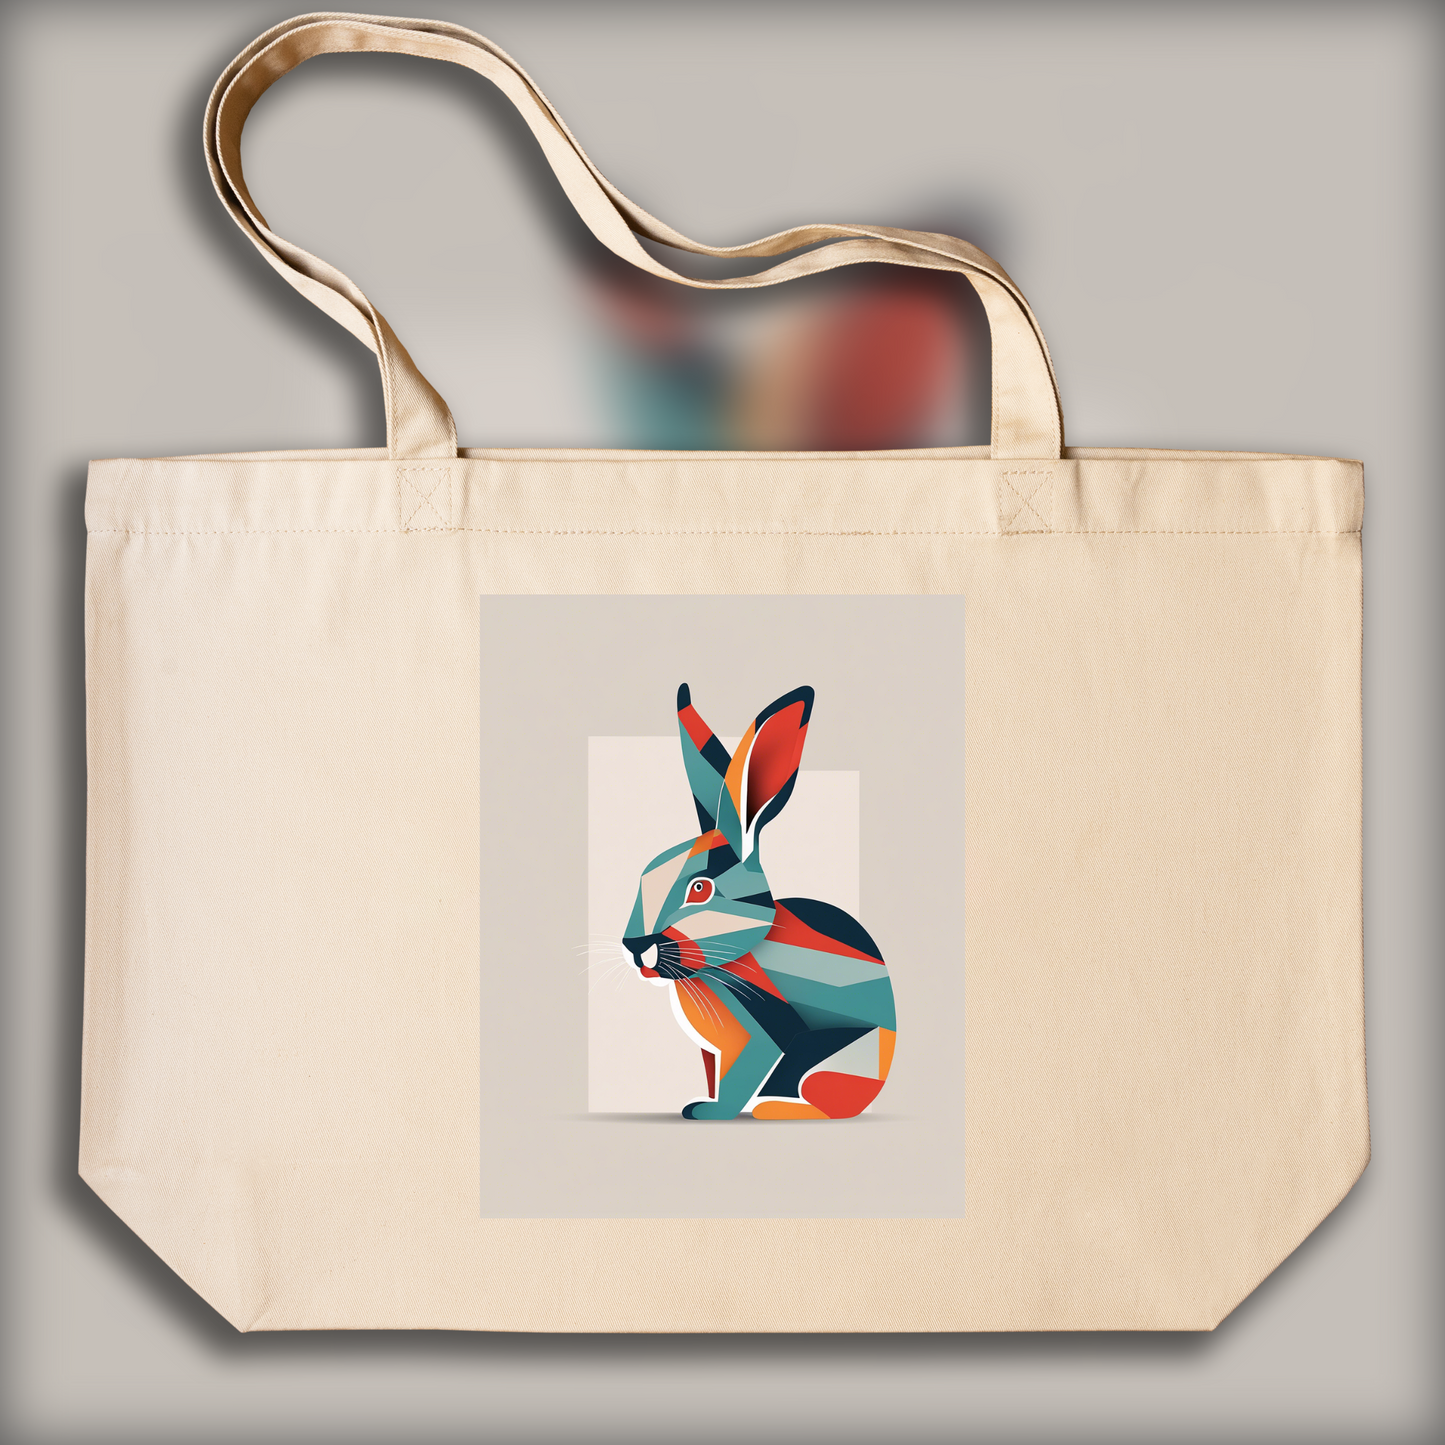 Tote bag - Minimalist art, Rabbit - 2643527623